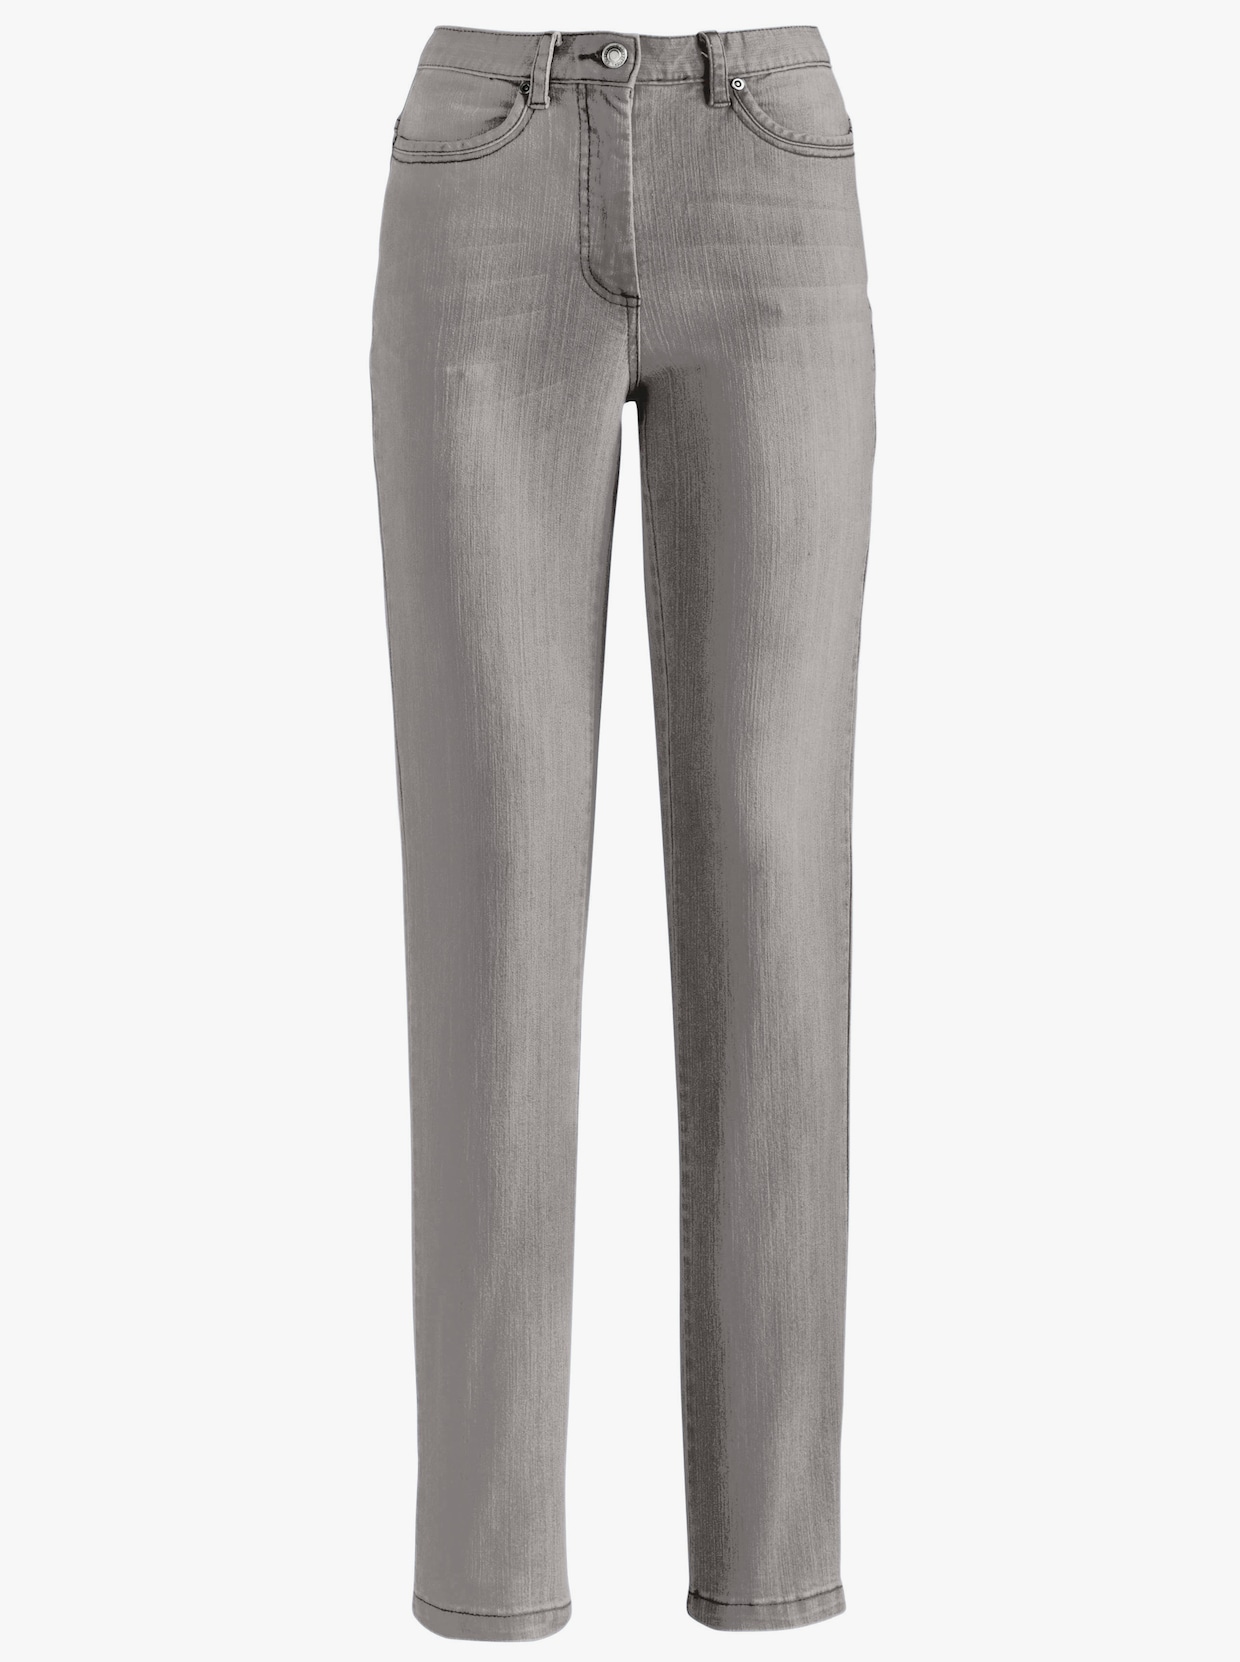 Jean 5 poches - denim gris